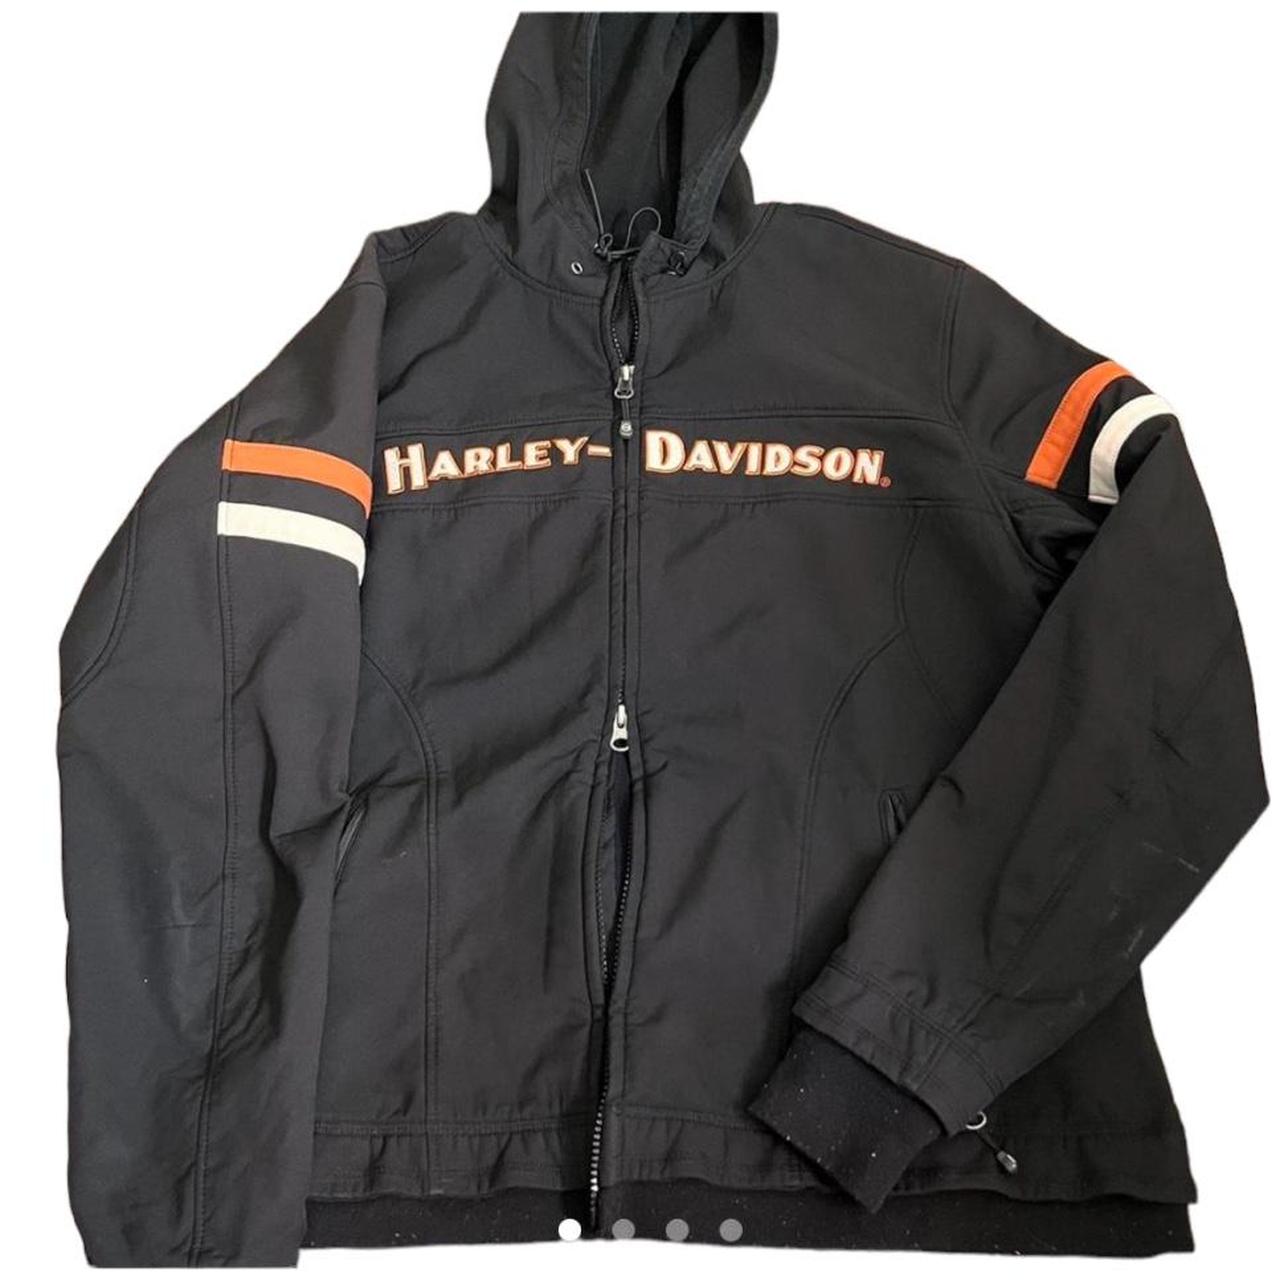 Harley Davidson Men's Jumper